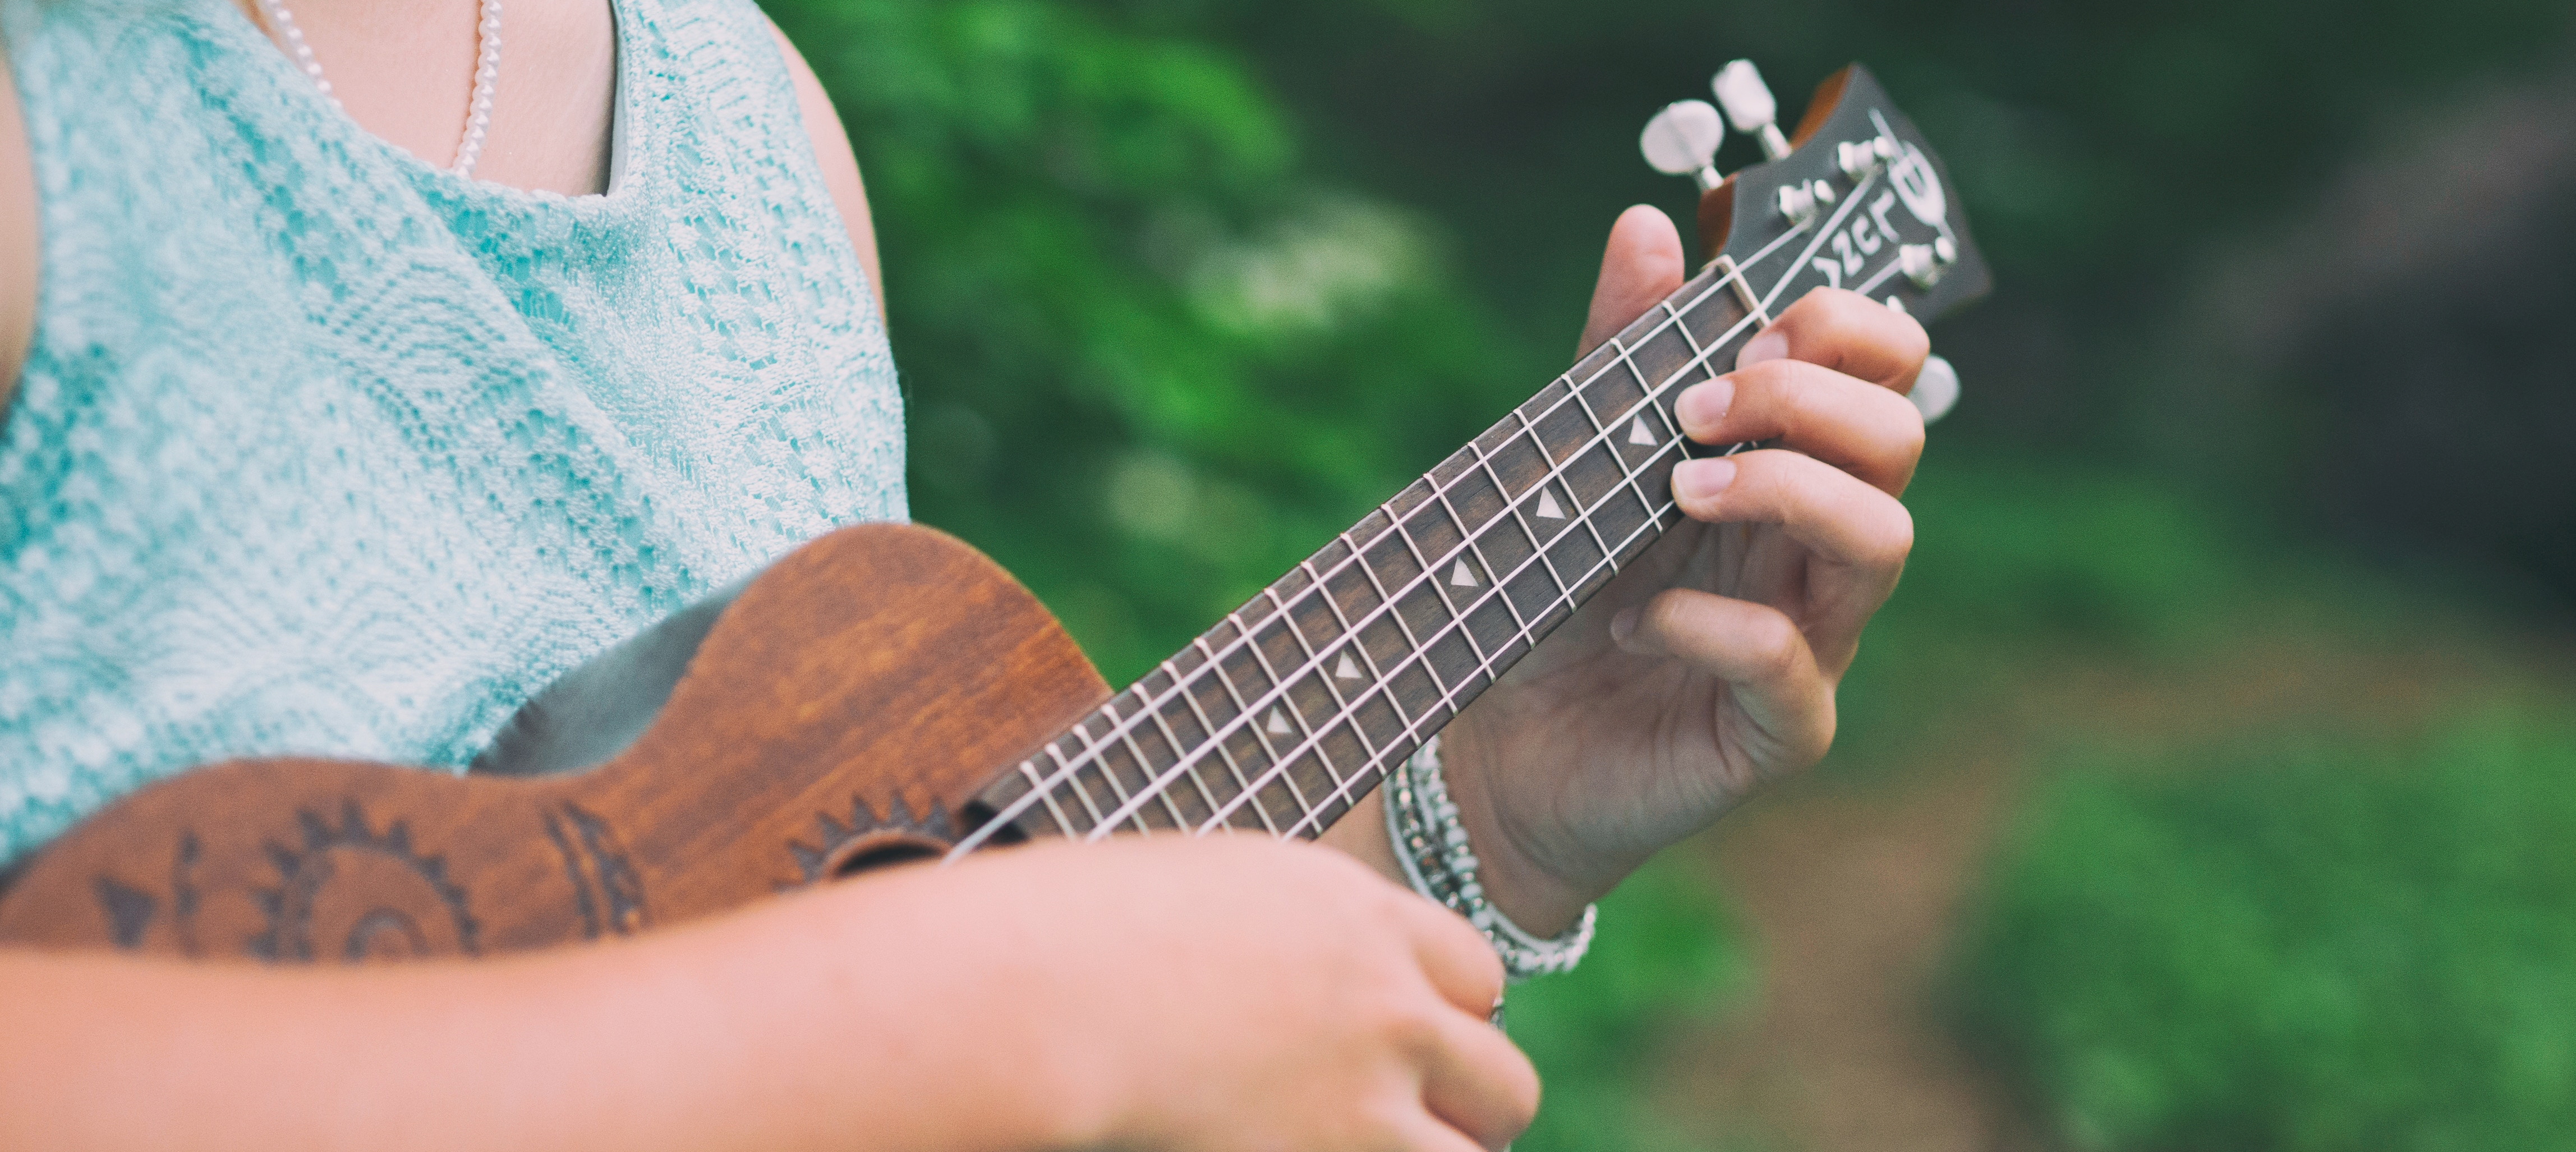 Woman playing a ukulele